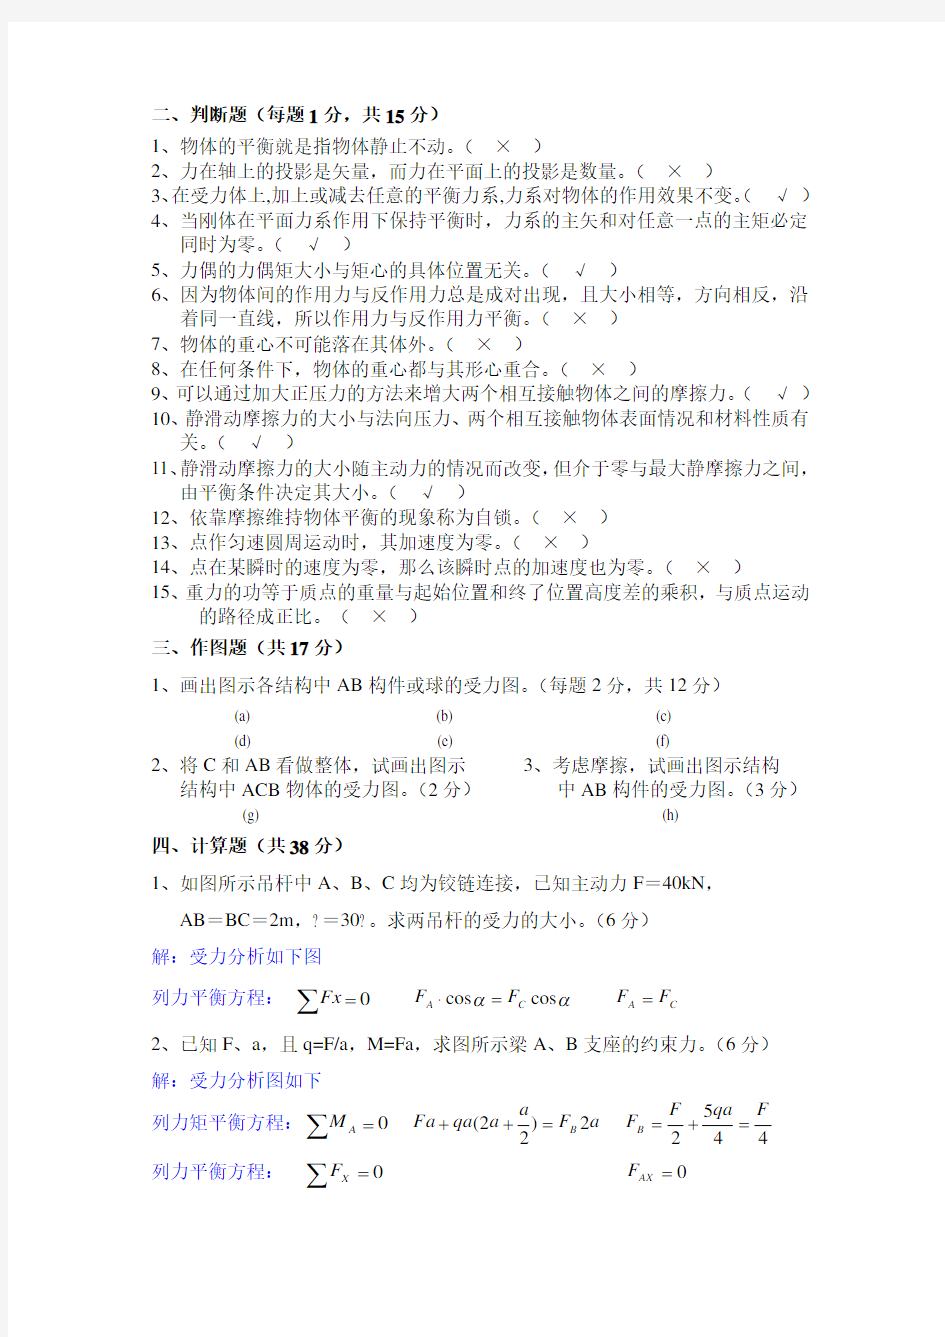 上海电大《机械制造基础》形考作业(一)及答案